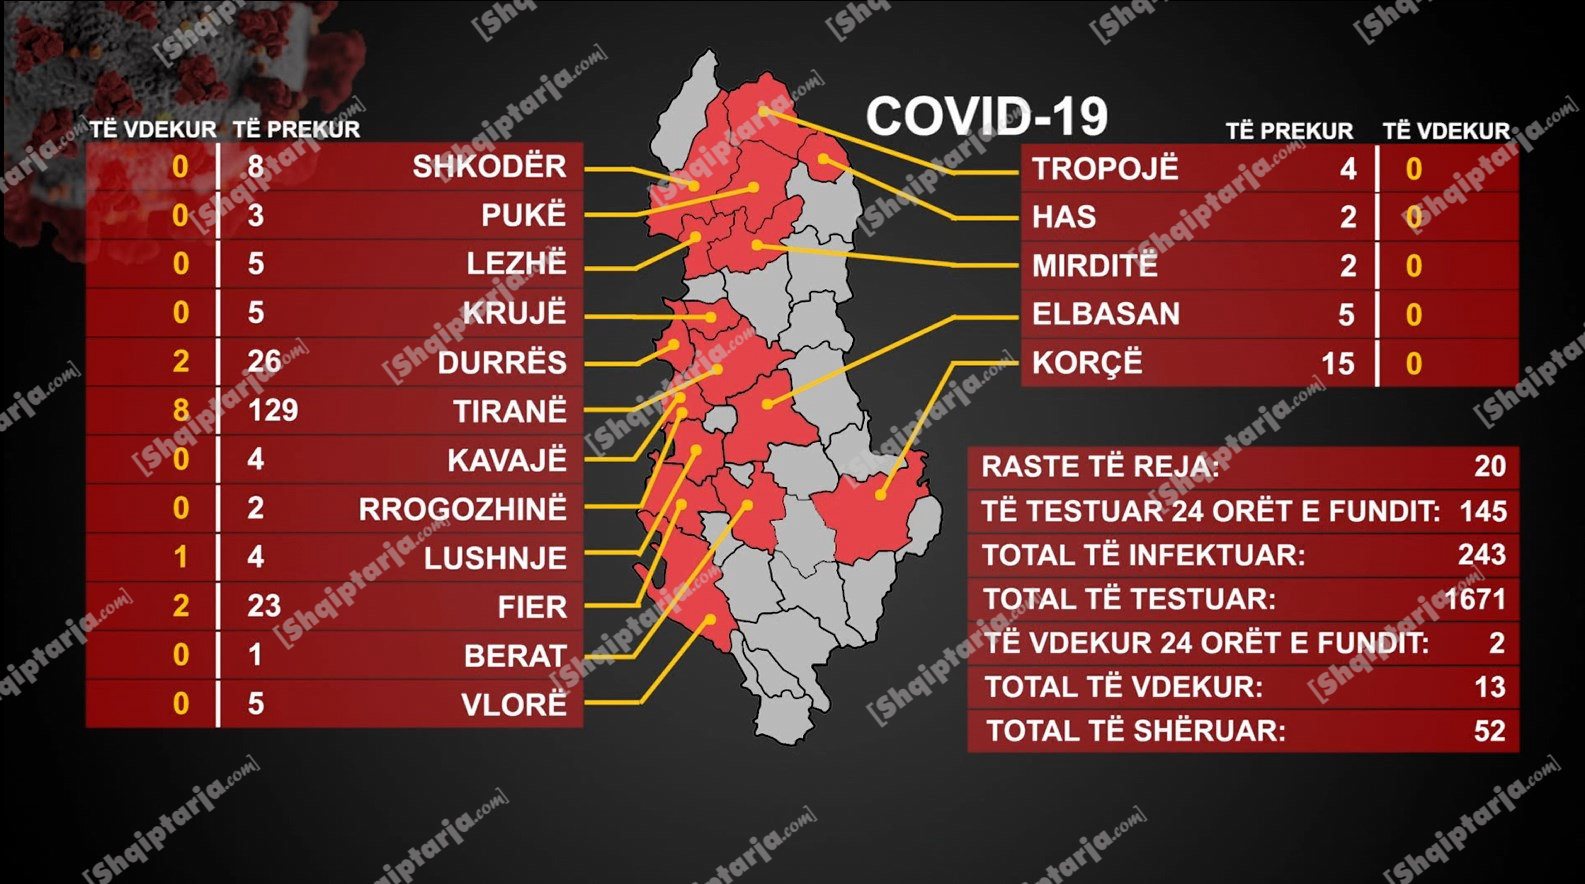 13 viktima me koronavirus, 243 të prekurn, 20 raste të reja sot